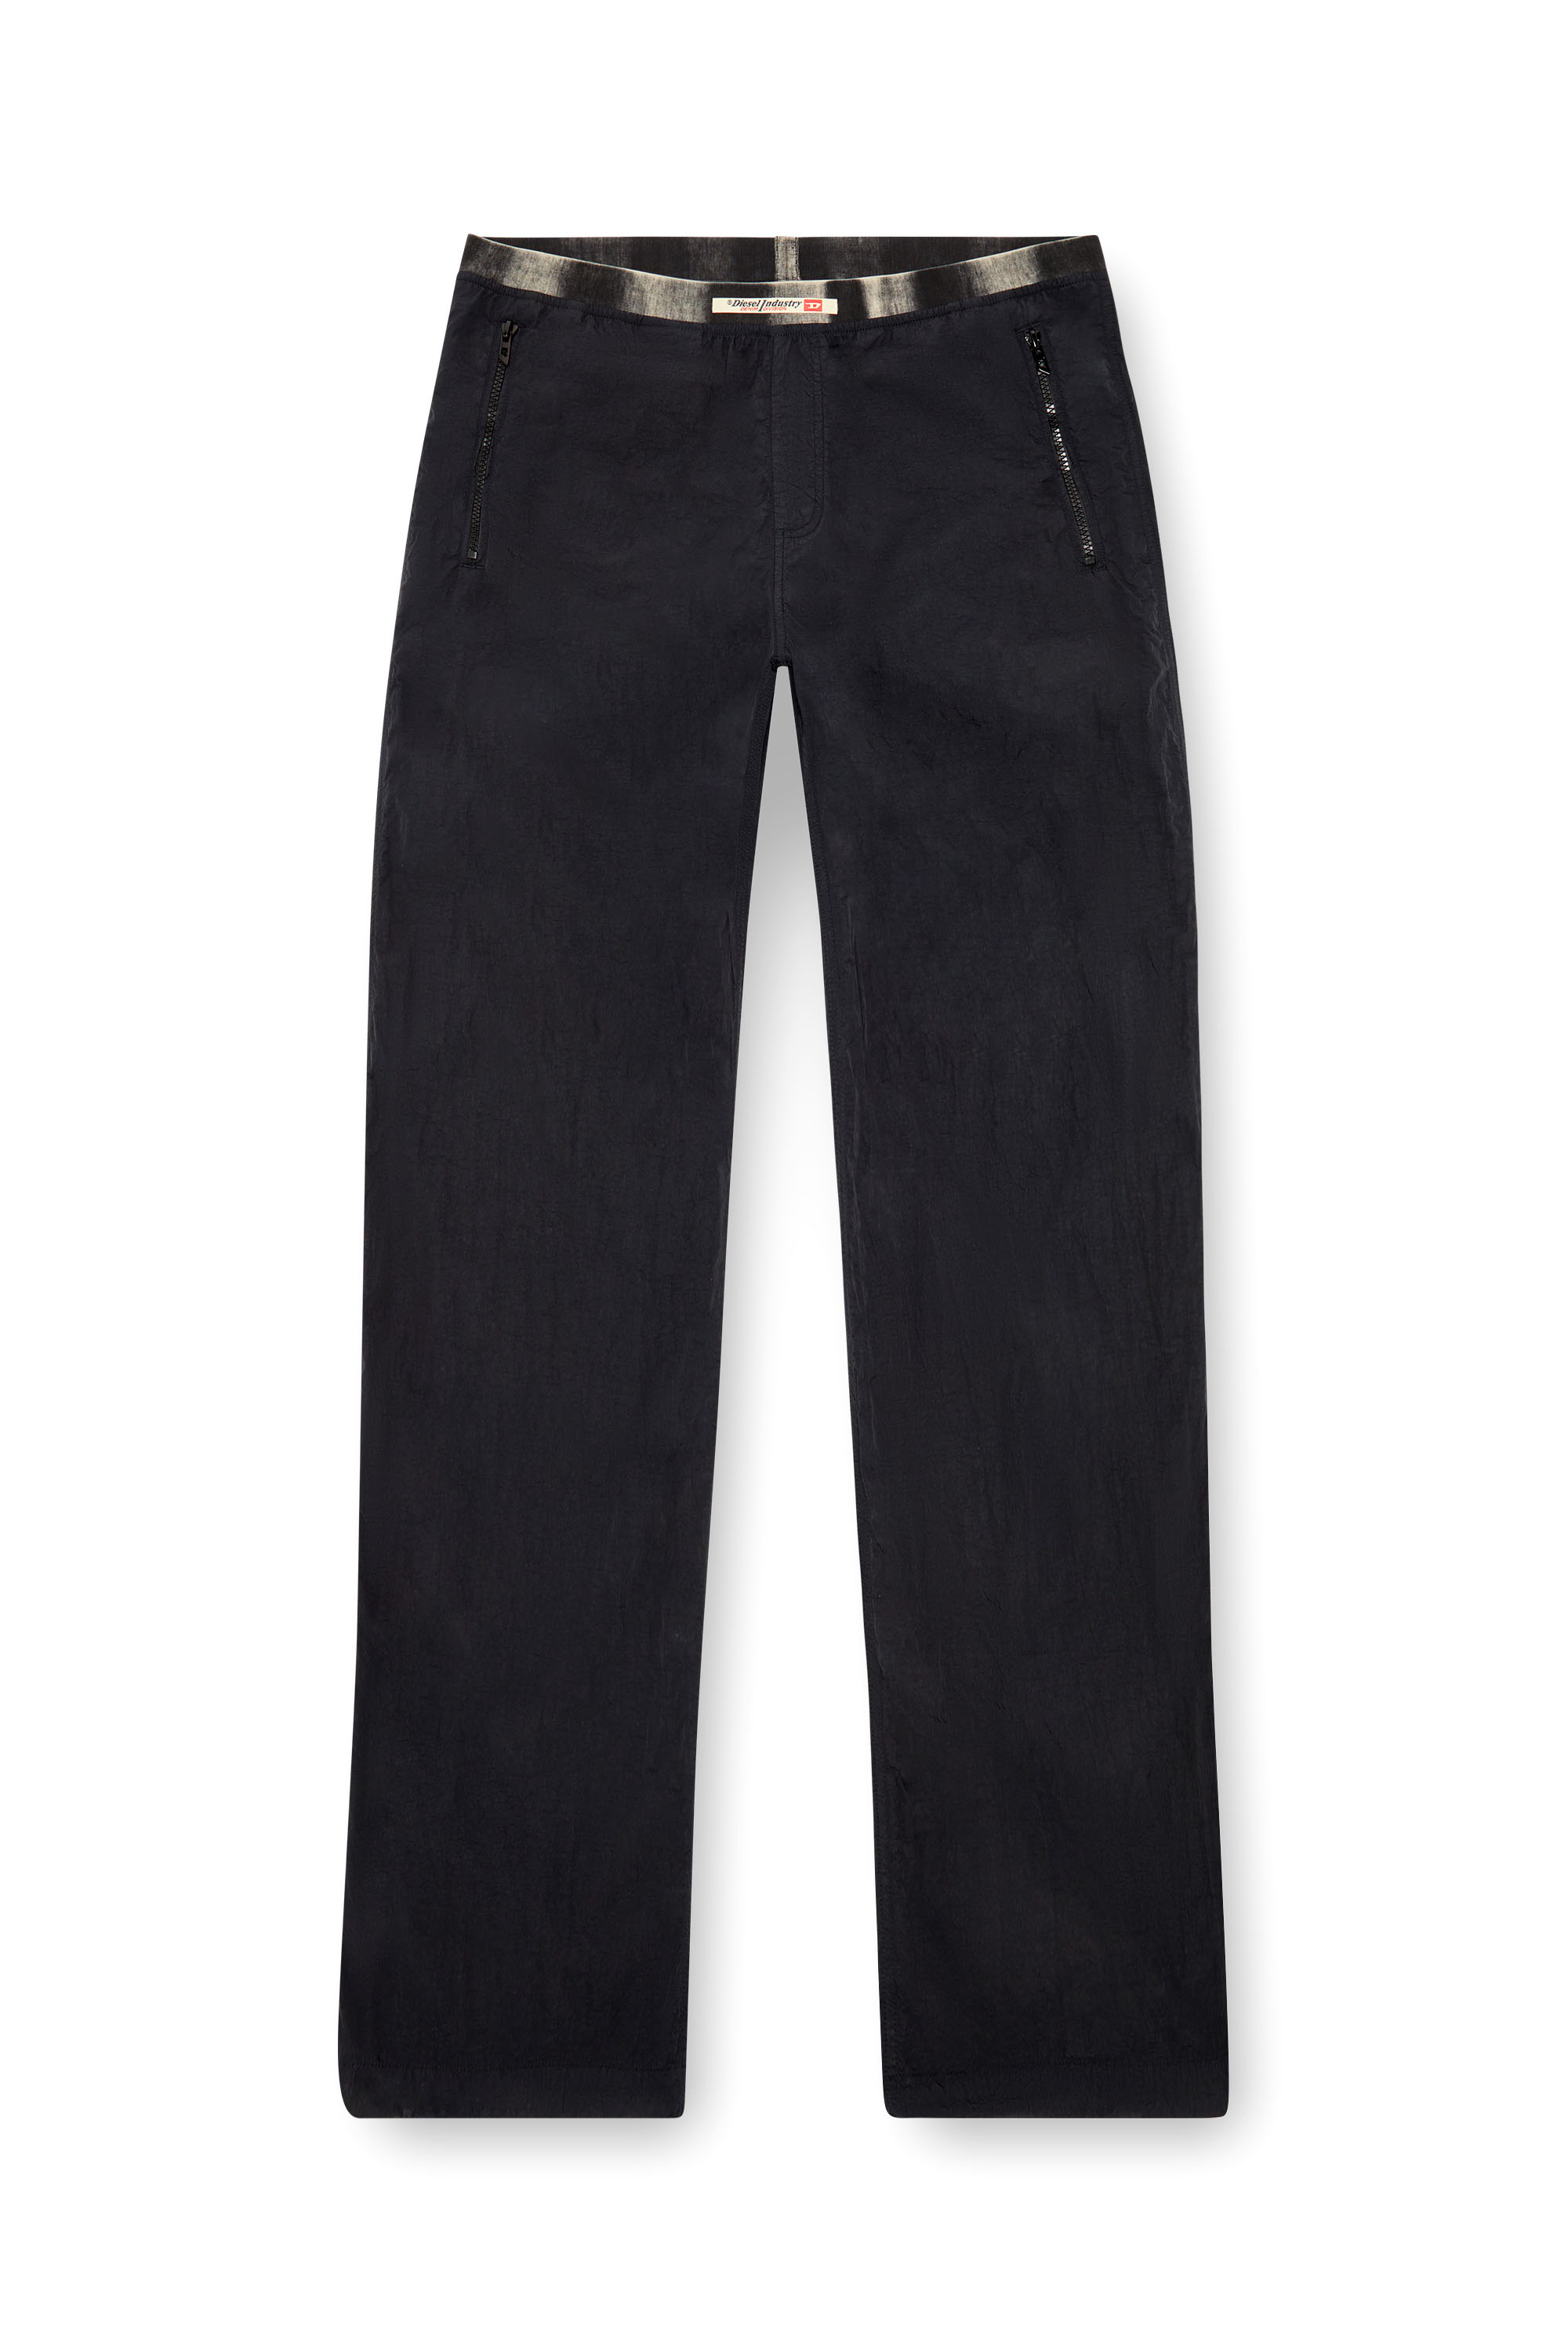 Diesel - P-POST, Hombre Pantalones ligeros de nailon arrugado in Negro - Image 4